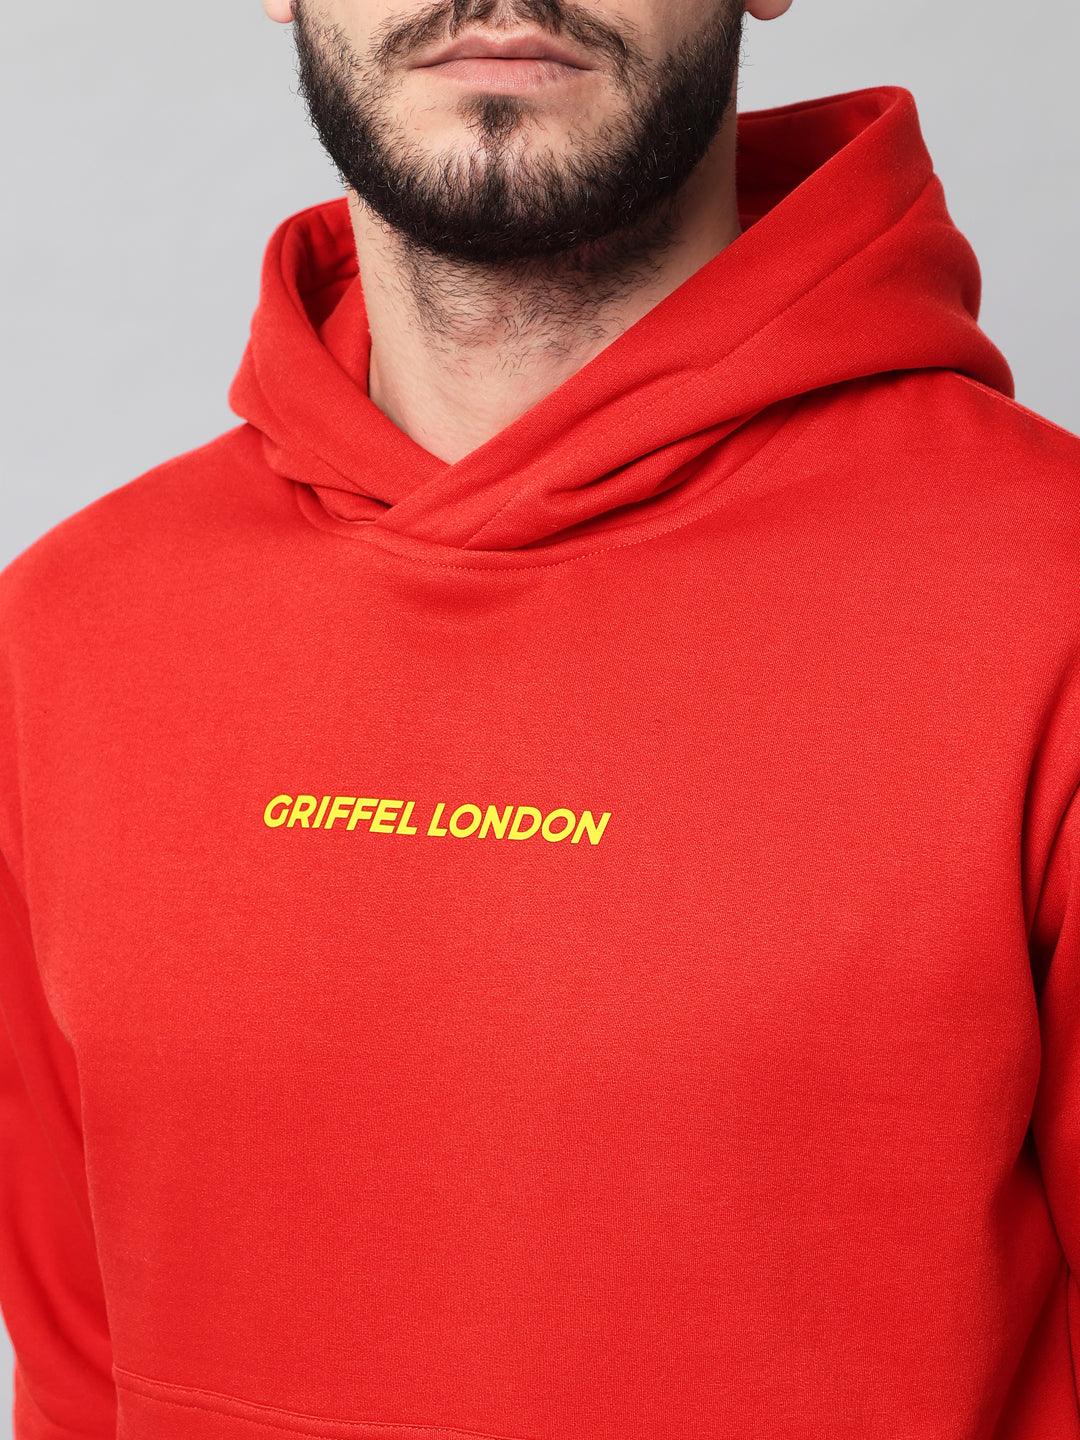 Griffel Men's Red Cotton Front Logo Fleece Hoody Sweatshirt with Full Sleeve - griffel